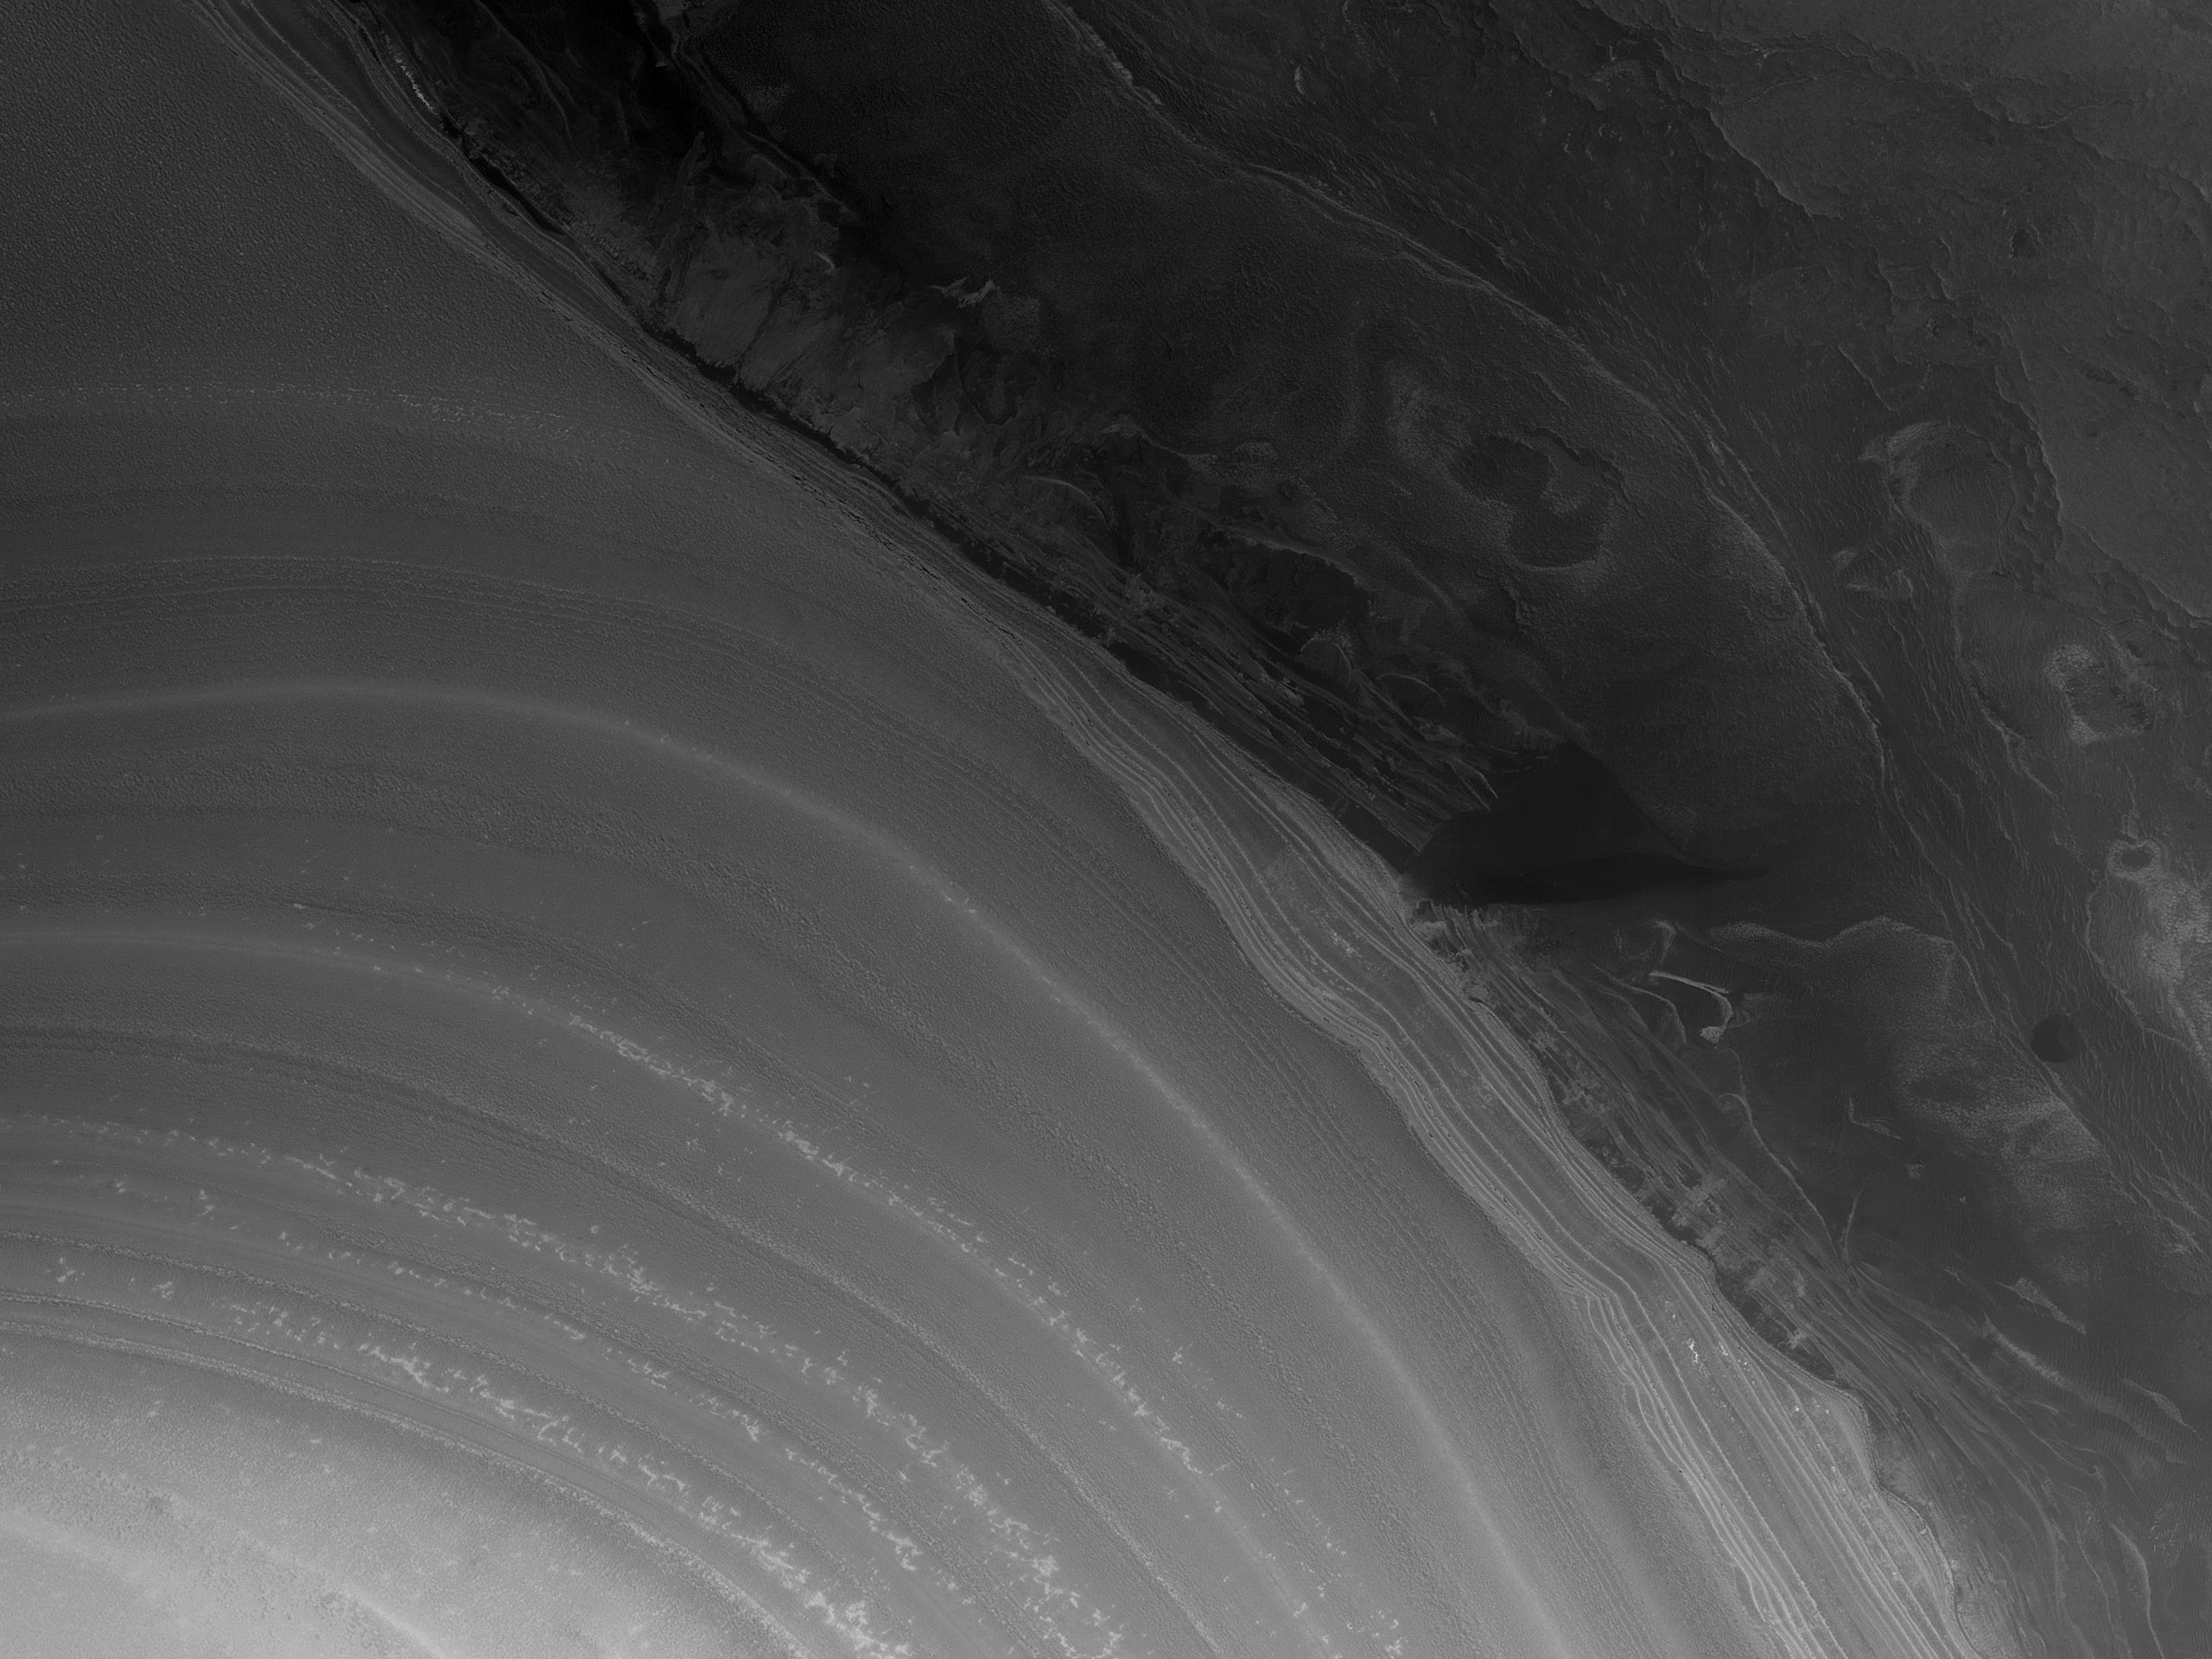 دیواره شیپ دار در لبه رسوبات لایه ای در قطب شمال مریخ